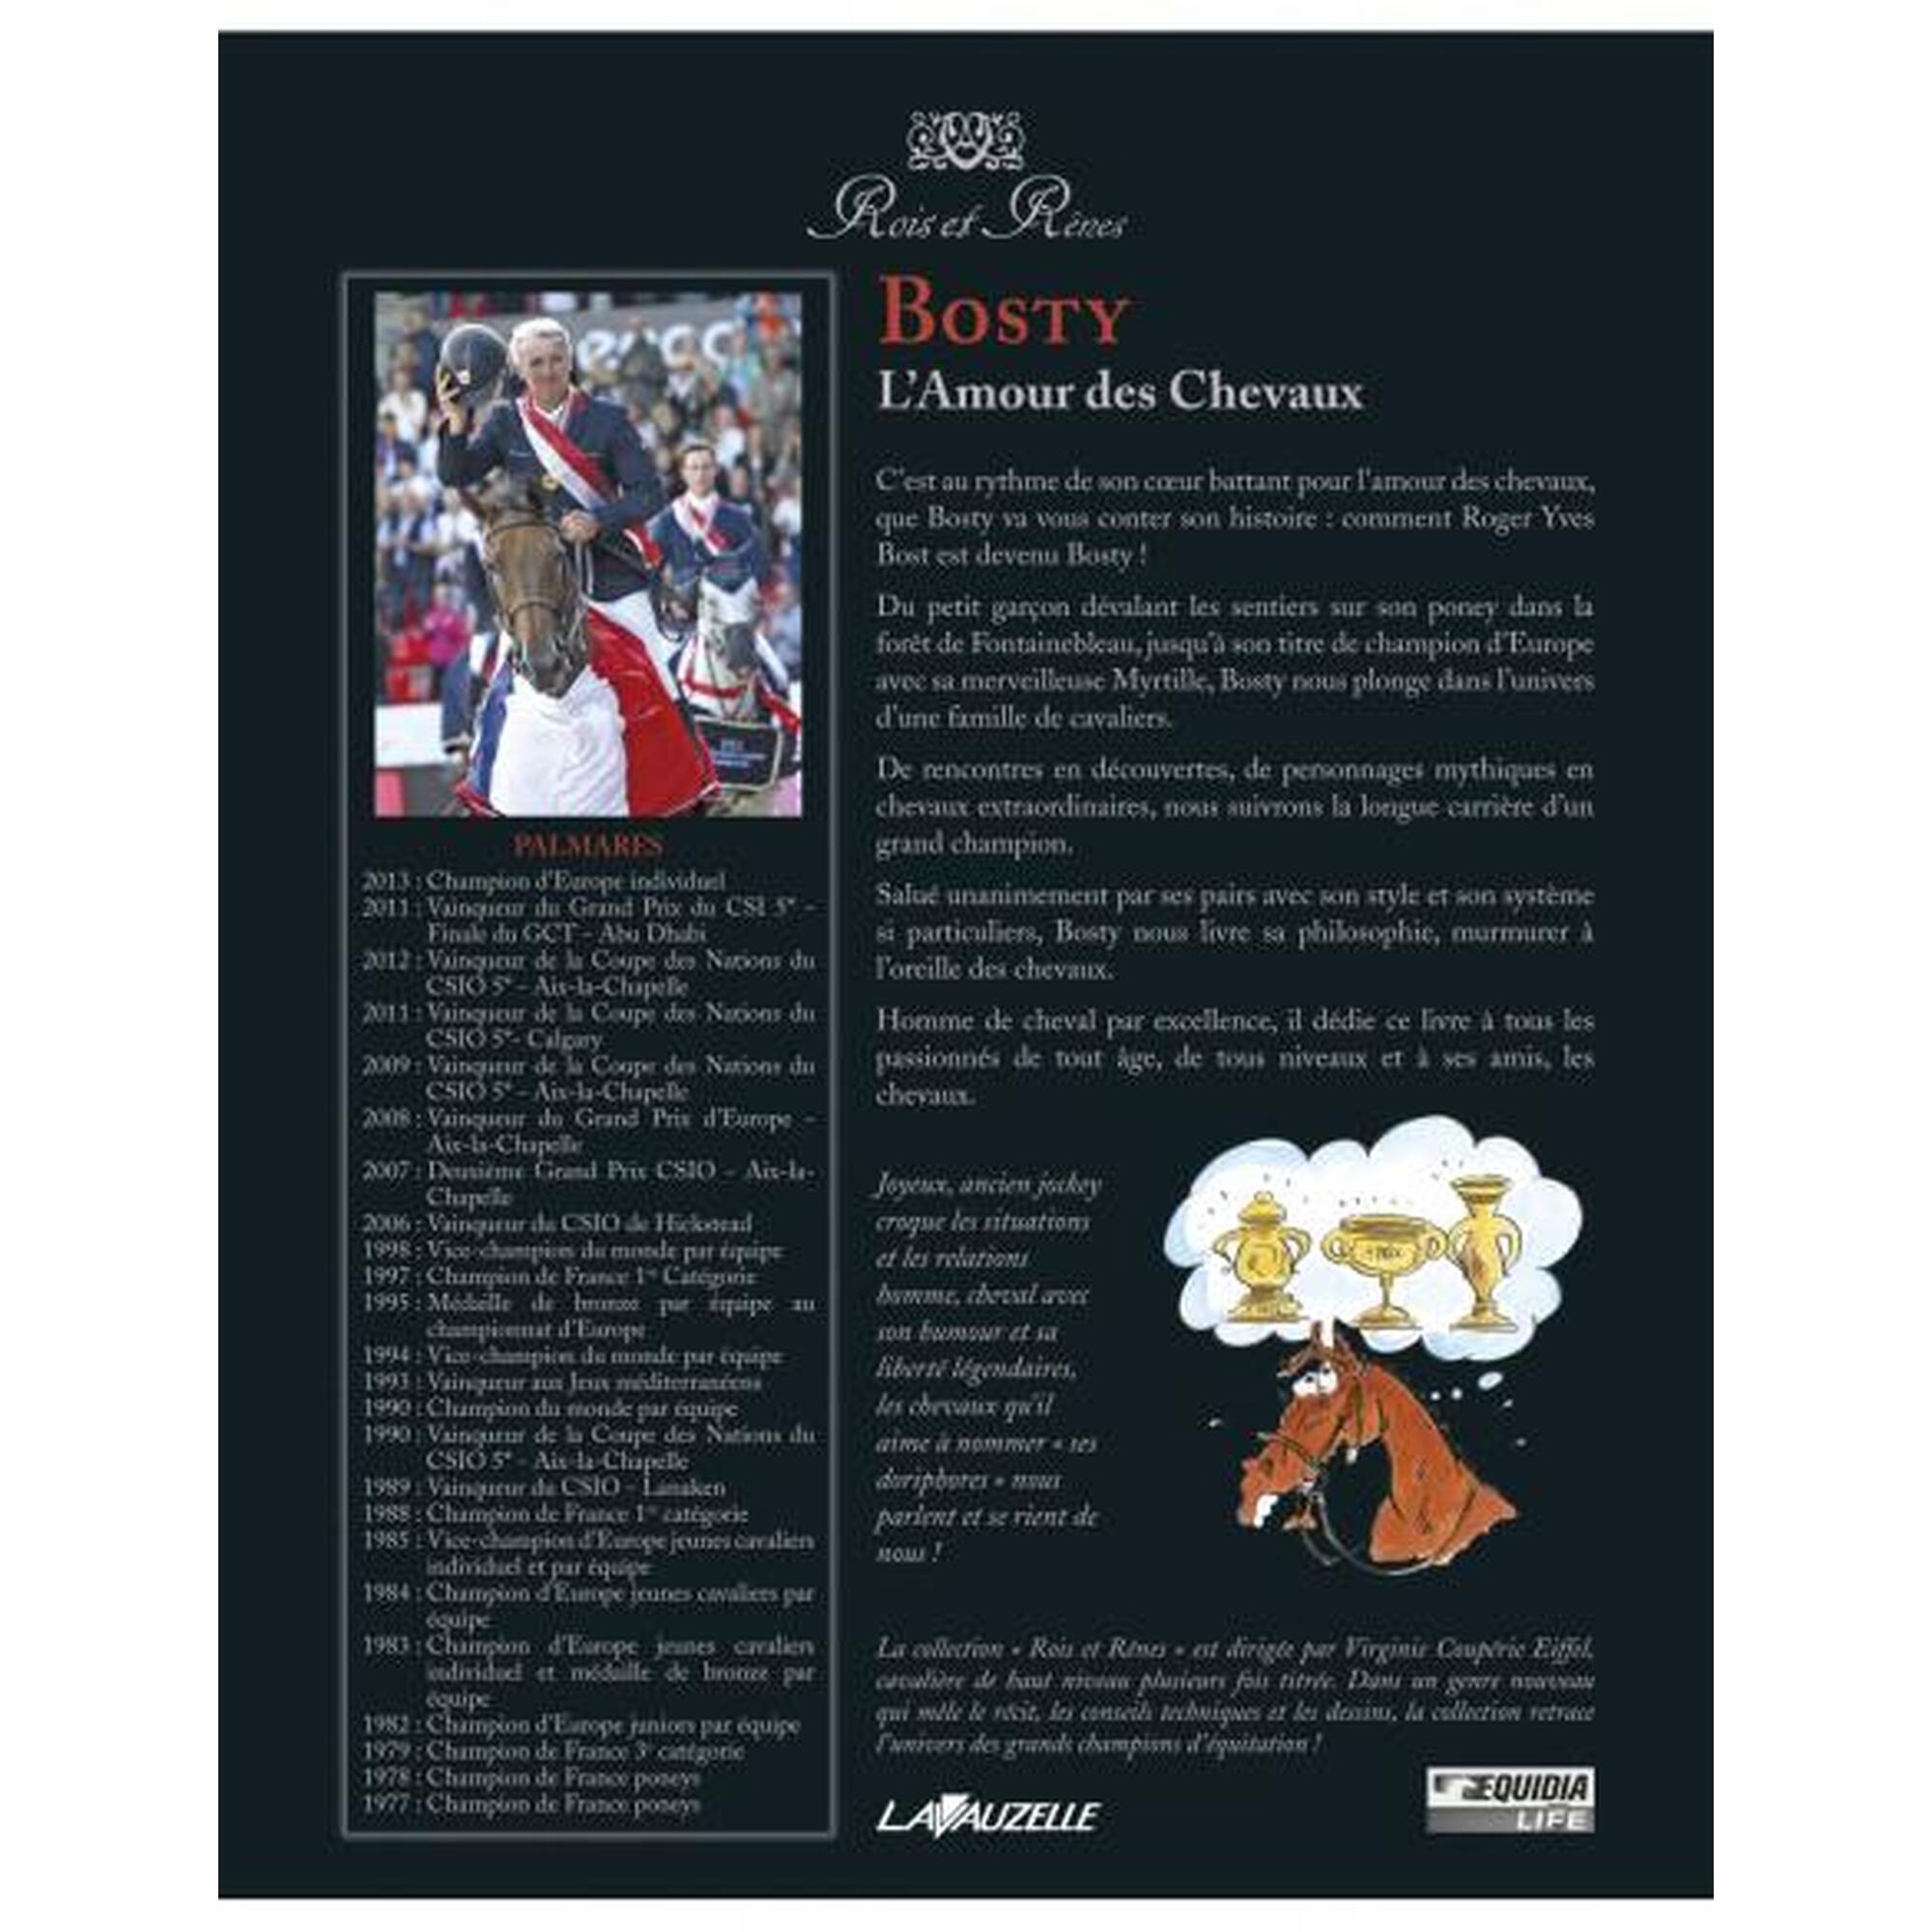 Bosty - L'Amour des Chevaux